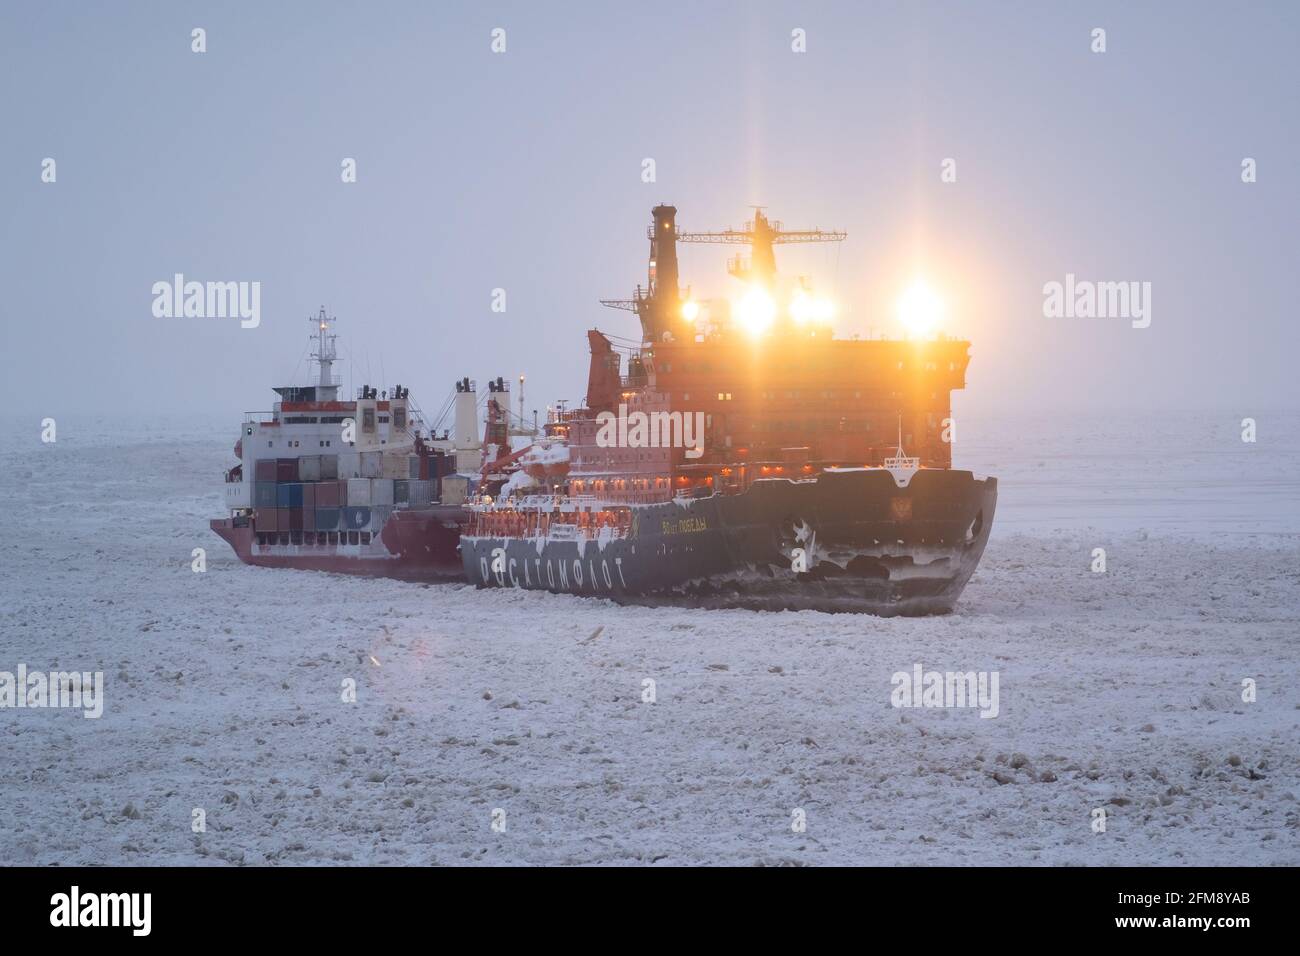 Sabetta, región de Tyumen, Rusia - 4 de abril de 2021: El rompehielos Pobedy de 50 remolcando un buque de carga seca sobre el hielo. La nieve está cayendo sobre el cielo. Foto de stock